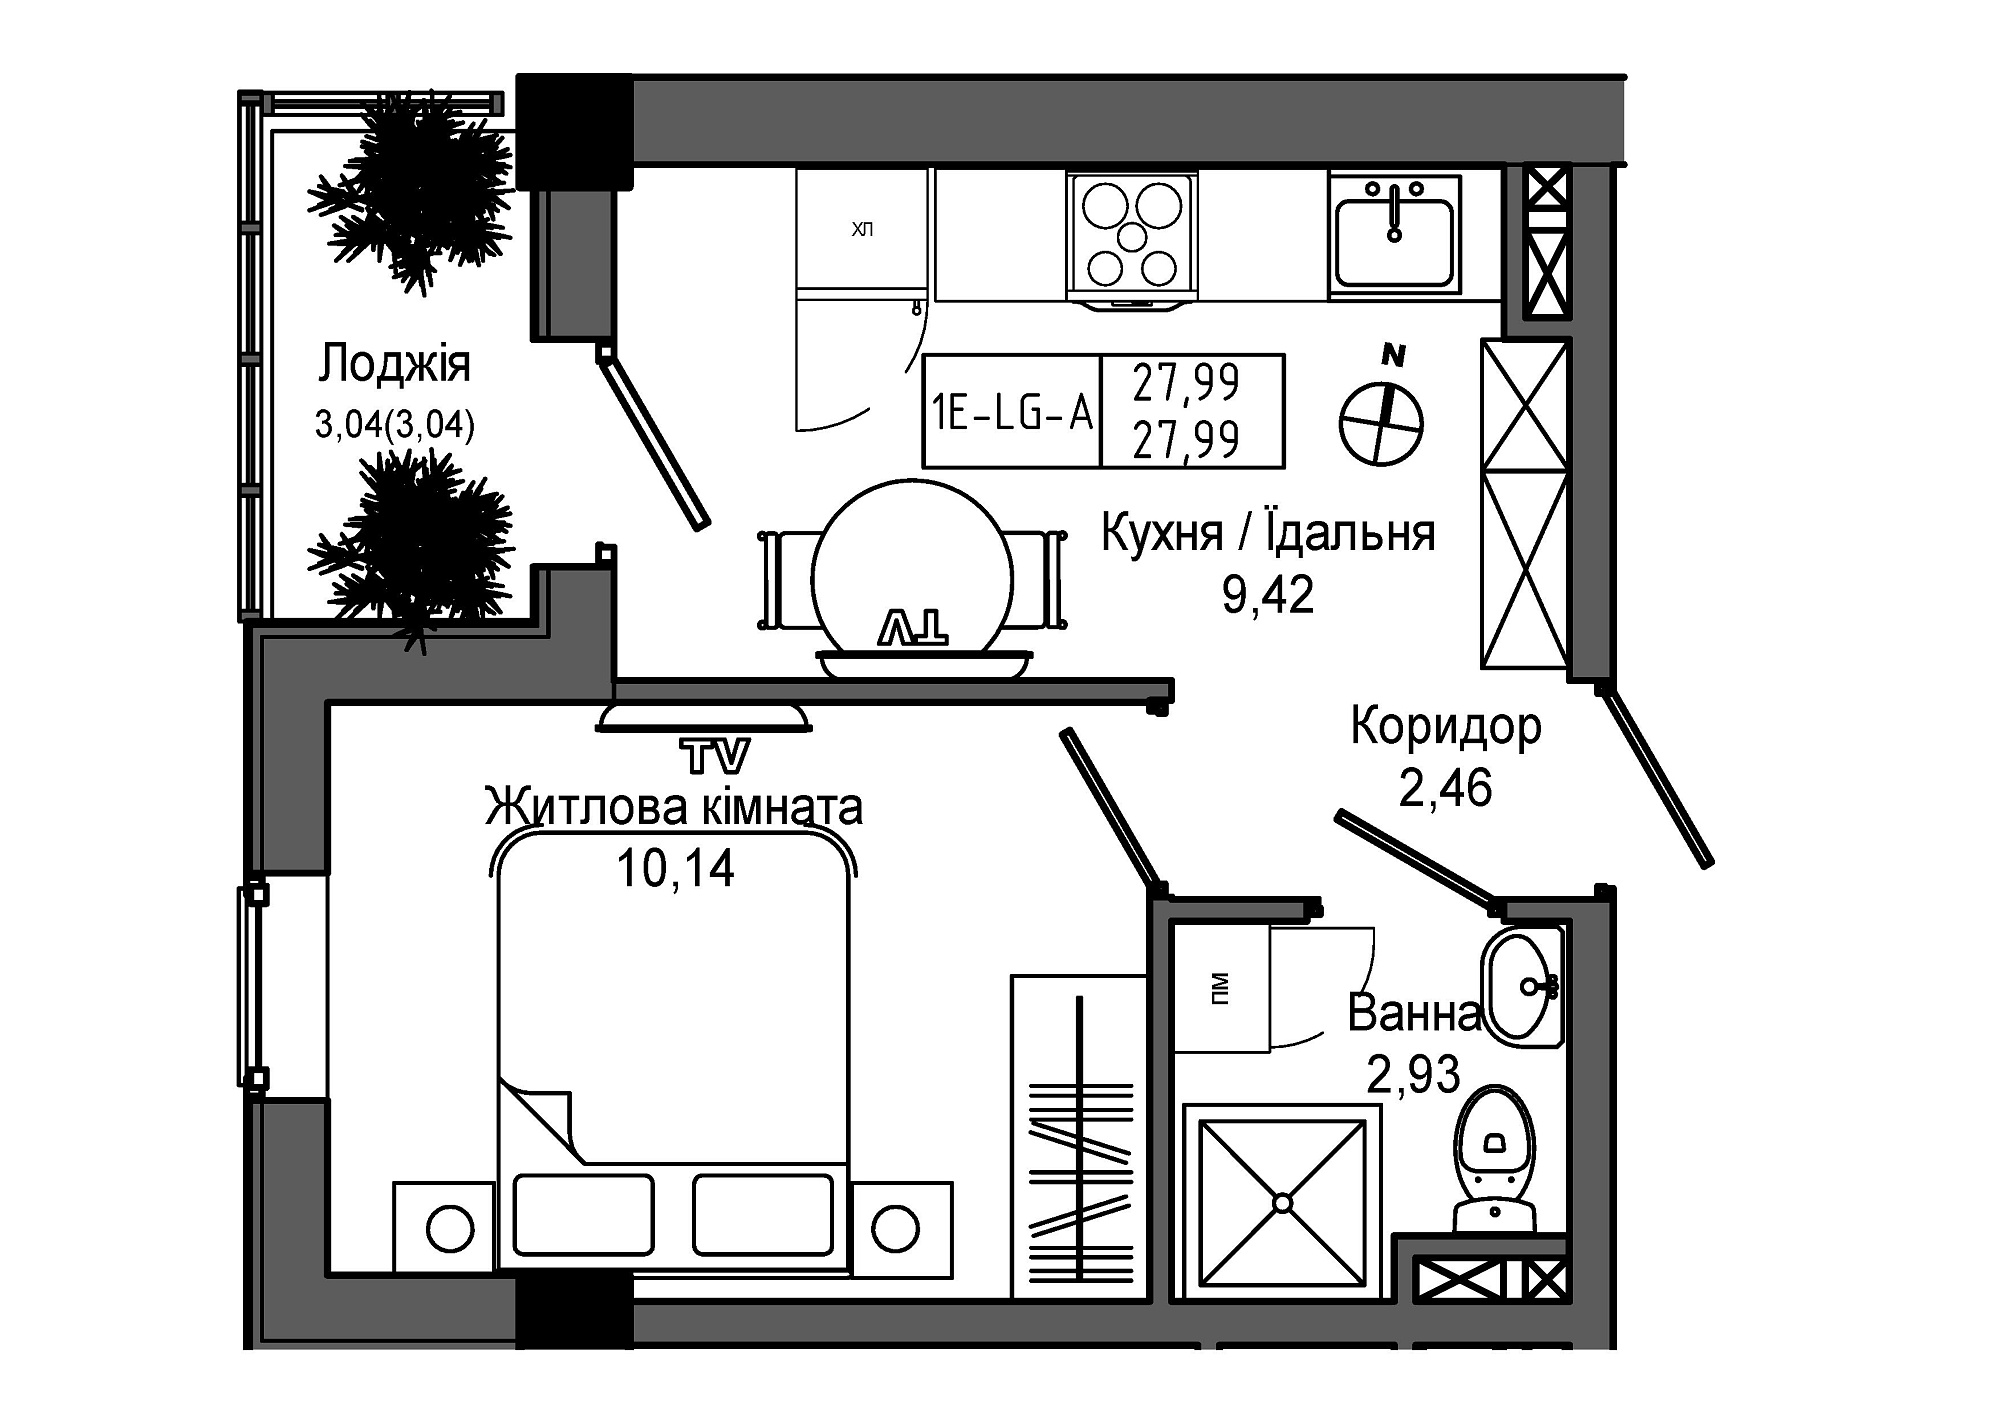 Планировка 1-к квартира площей 27.99м2, UM-006-00/0012.